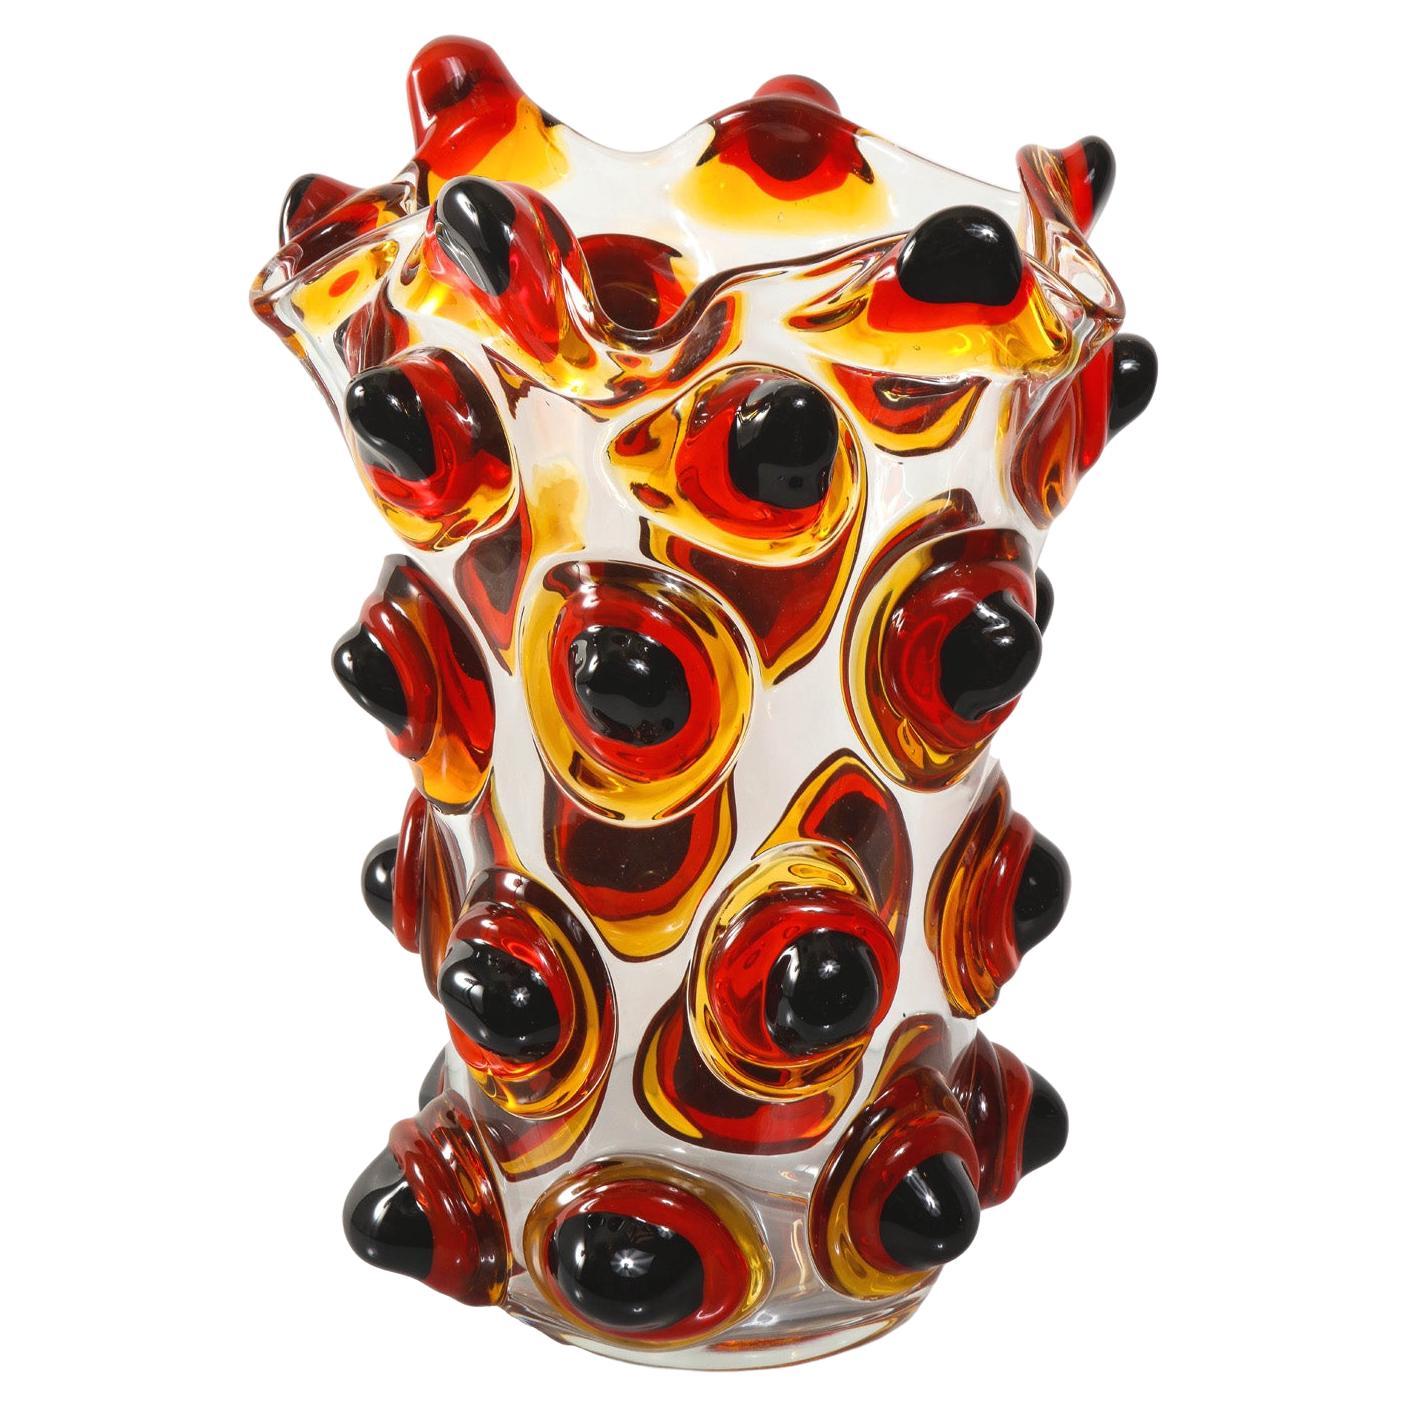 Kunsthandwerkliche Vase aus Muranoglas, klar und bernsteinfarben 2021